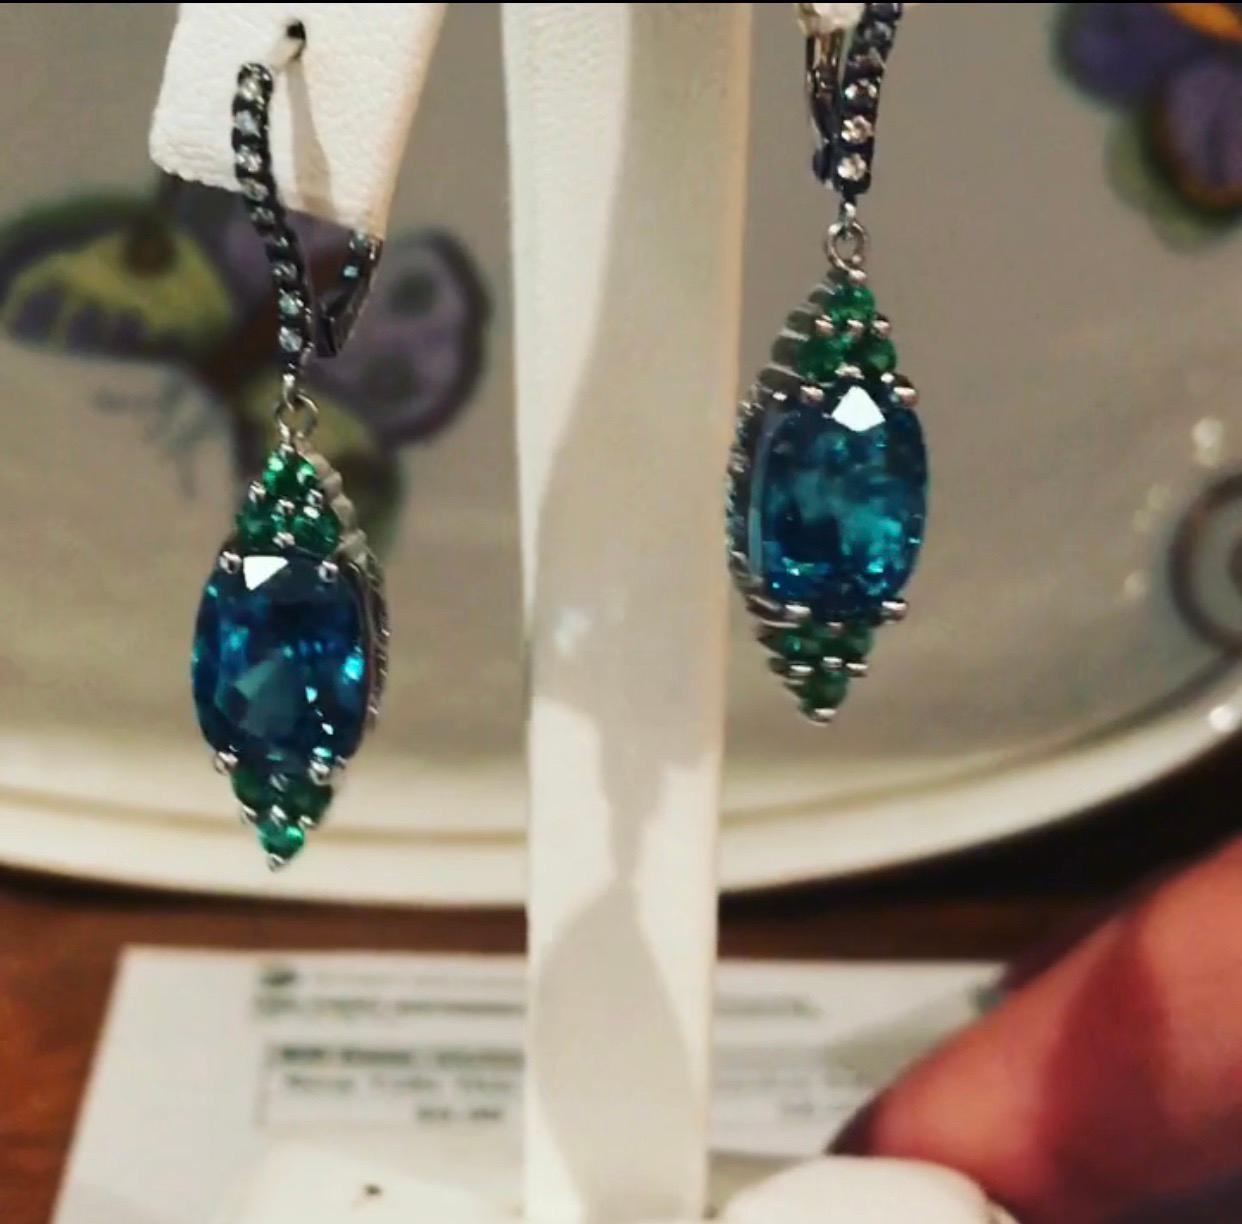 Bella Campbell für Campbellian Sammlung, 18 K Weißgold baumelnden Ohrringe kombinieren blauen Zirkon und grüner Granat, mit Diamanten akzentuiert als  die seitlichen Details und die Rückseite des Hebels. Blauer Zirkon und grüner Granat bilden eine